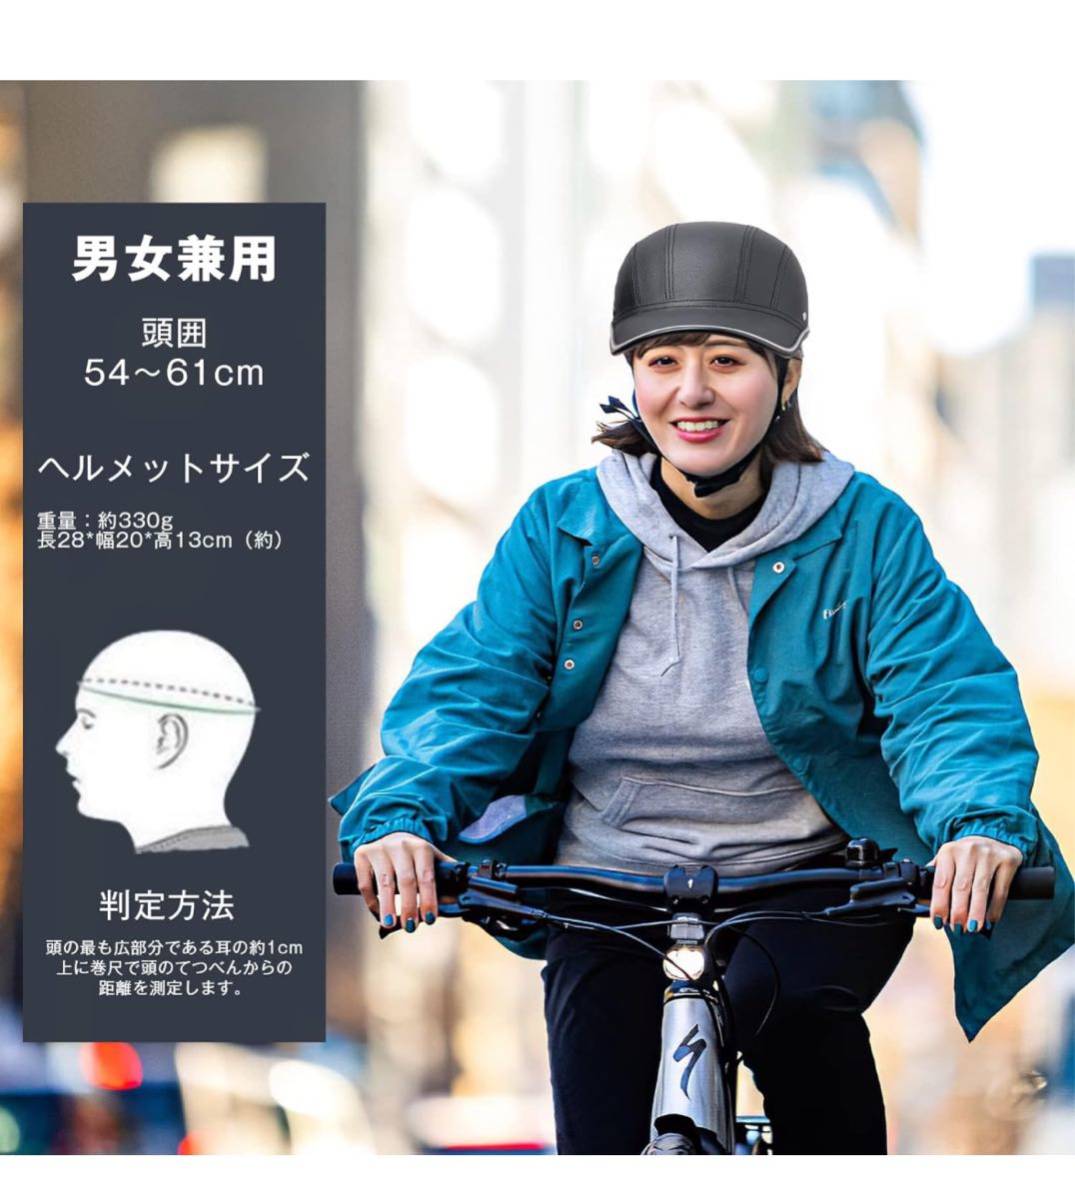 自転車 ヘルメット CPSC/CE認定済み アーバン ベースボール 帽子 スタイル 耐紫外線性 男女兼用 ロードバイク ヘルメット 超軽量安全性_画像5